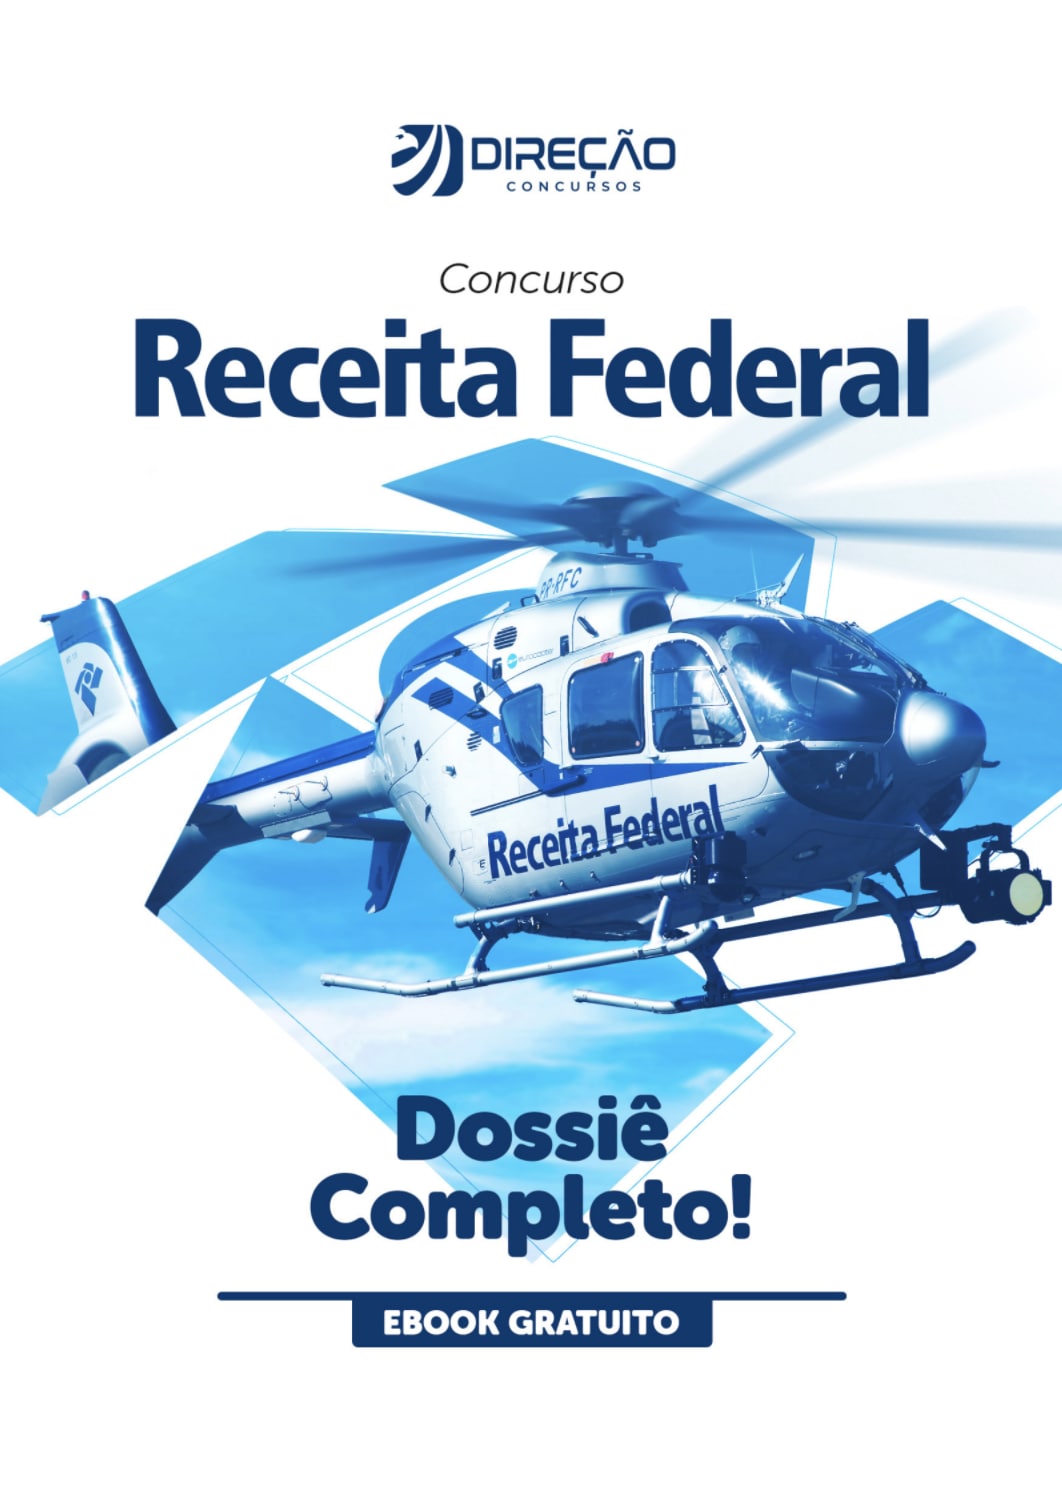 https://www.direcaoconcursos.com.br/inscricao-ebook-dossie-rfb